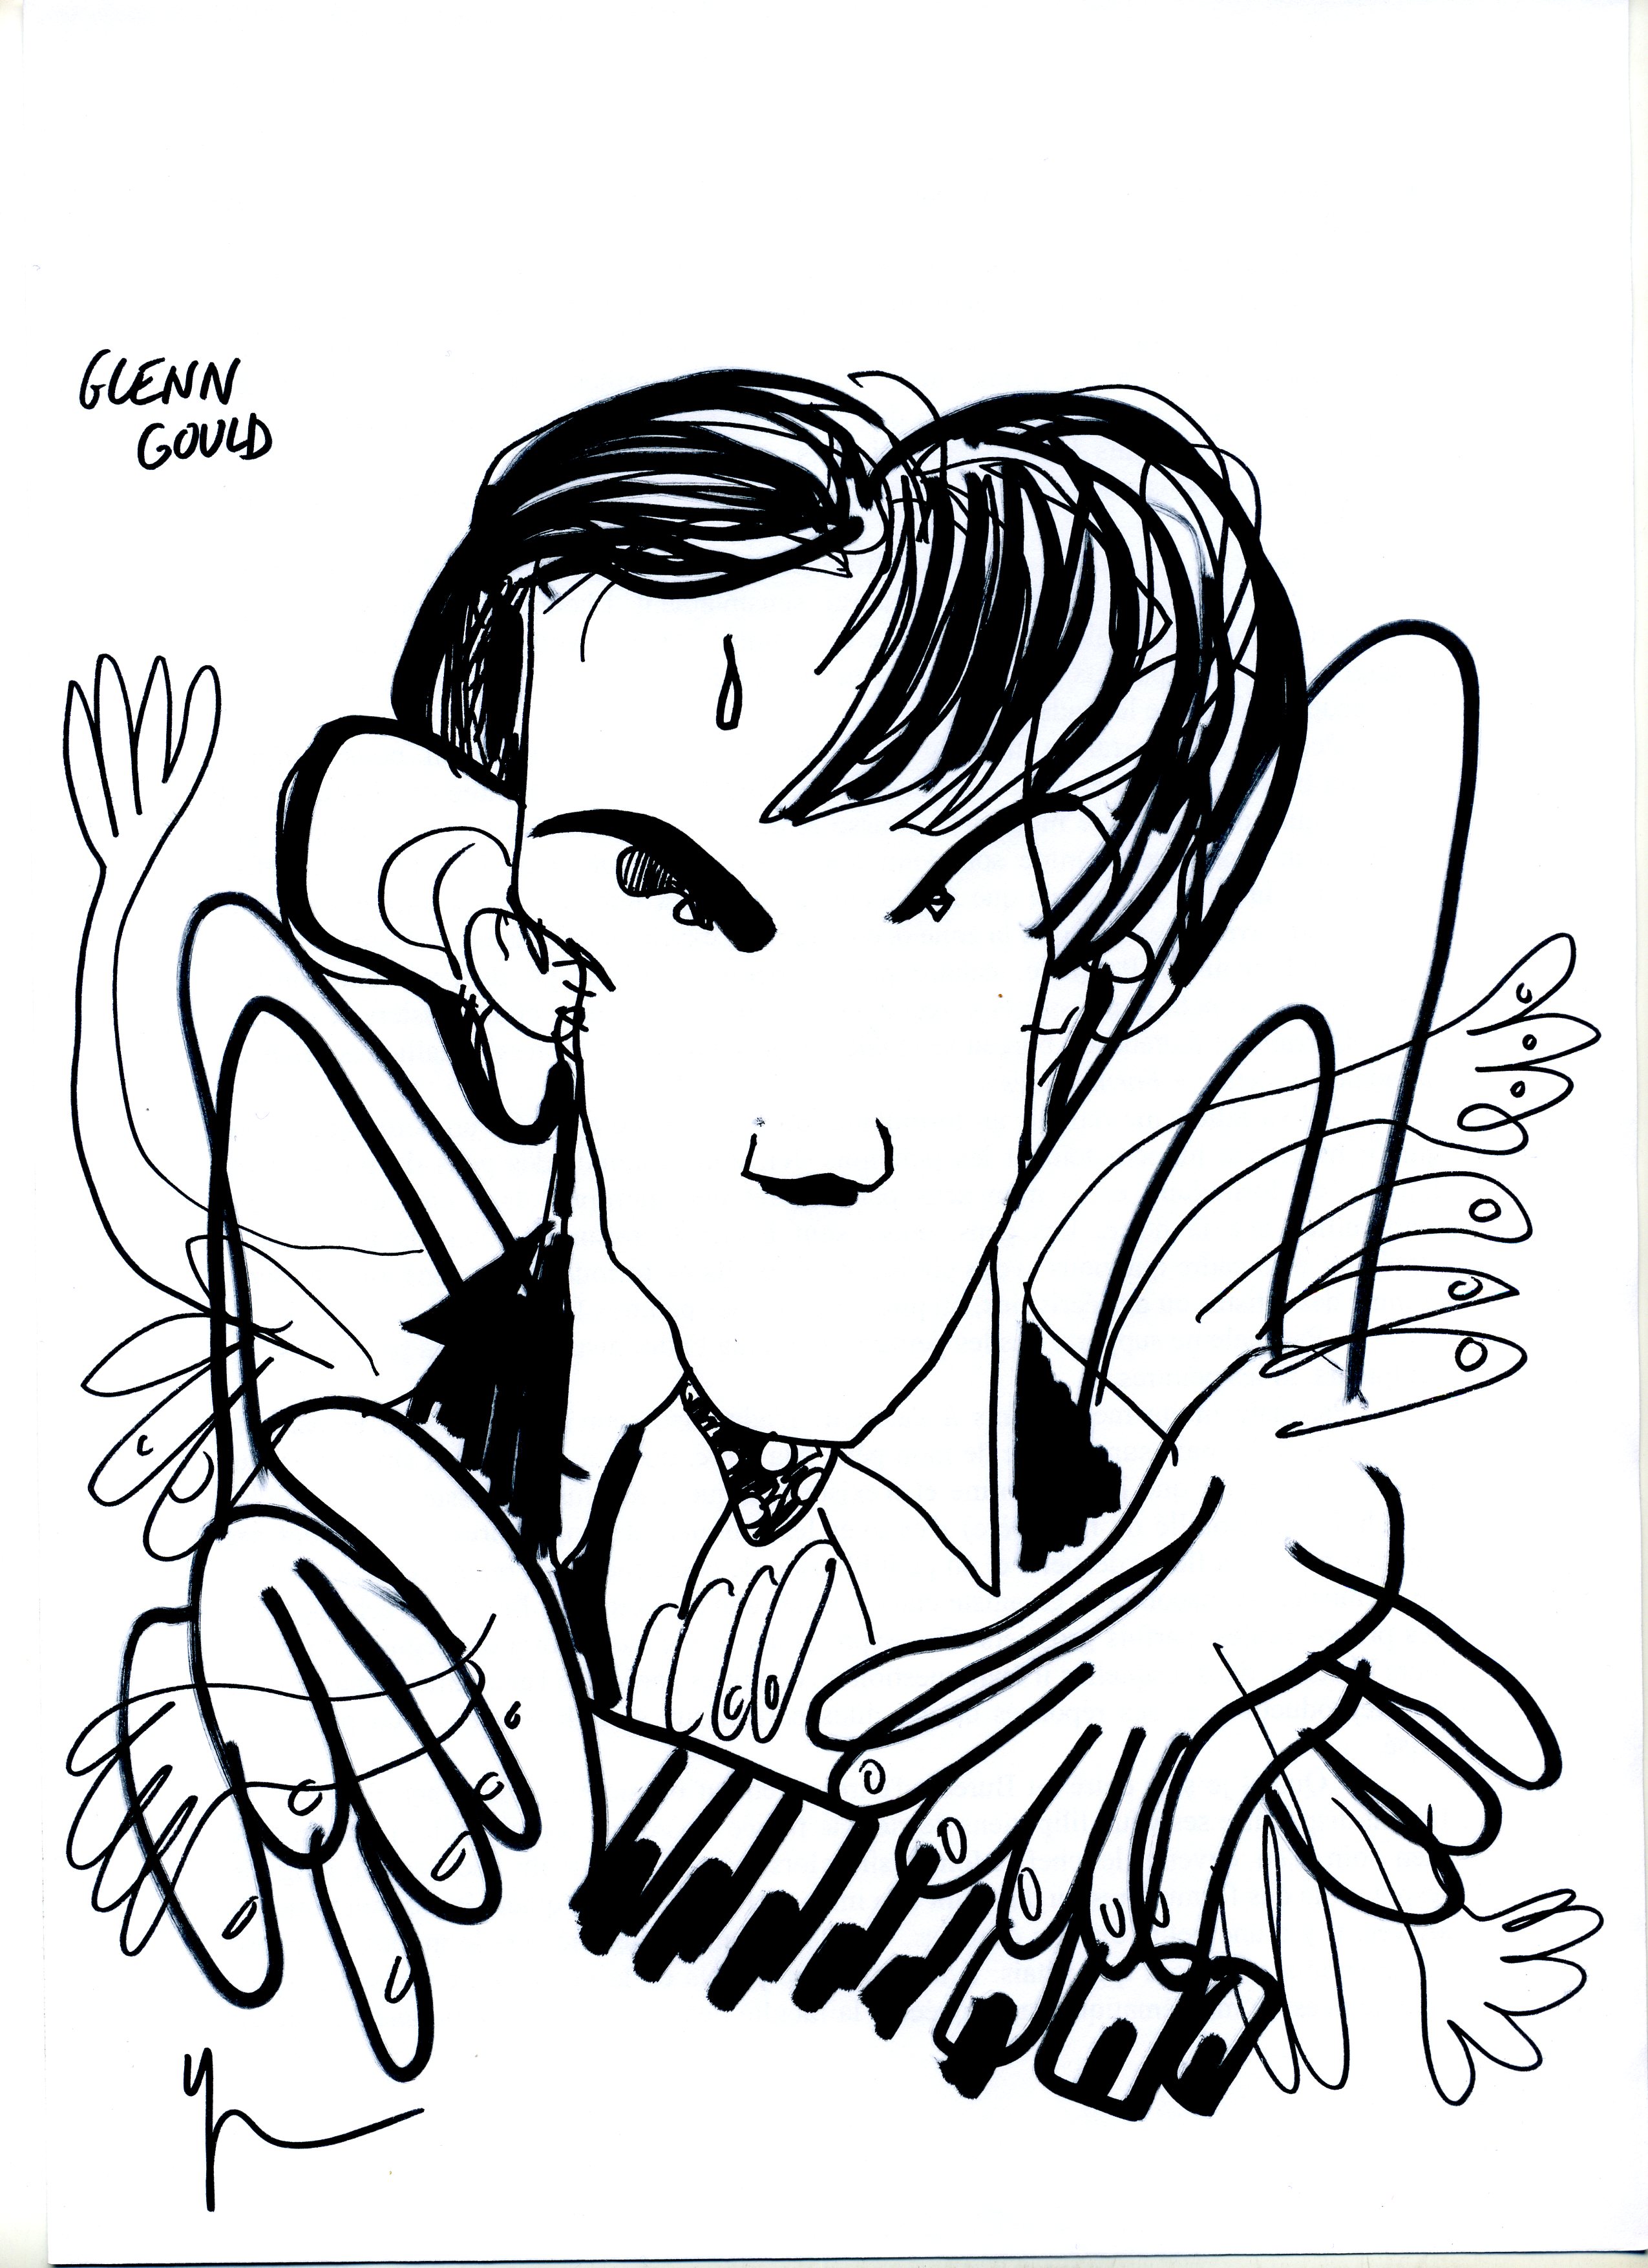 Portrait de Glenn Gould dessiné par Yann Moix